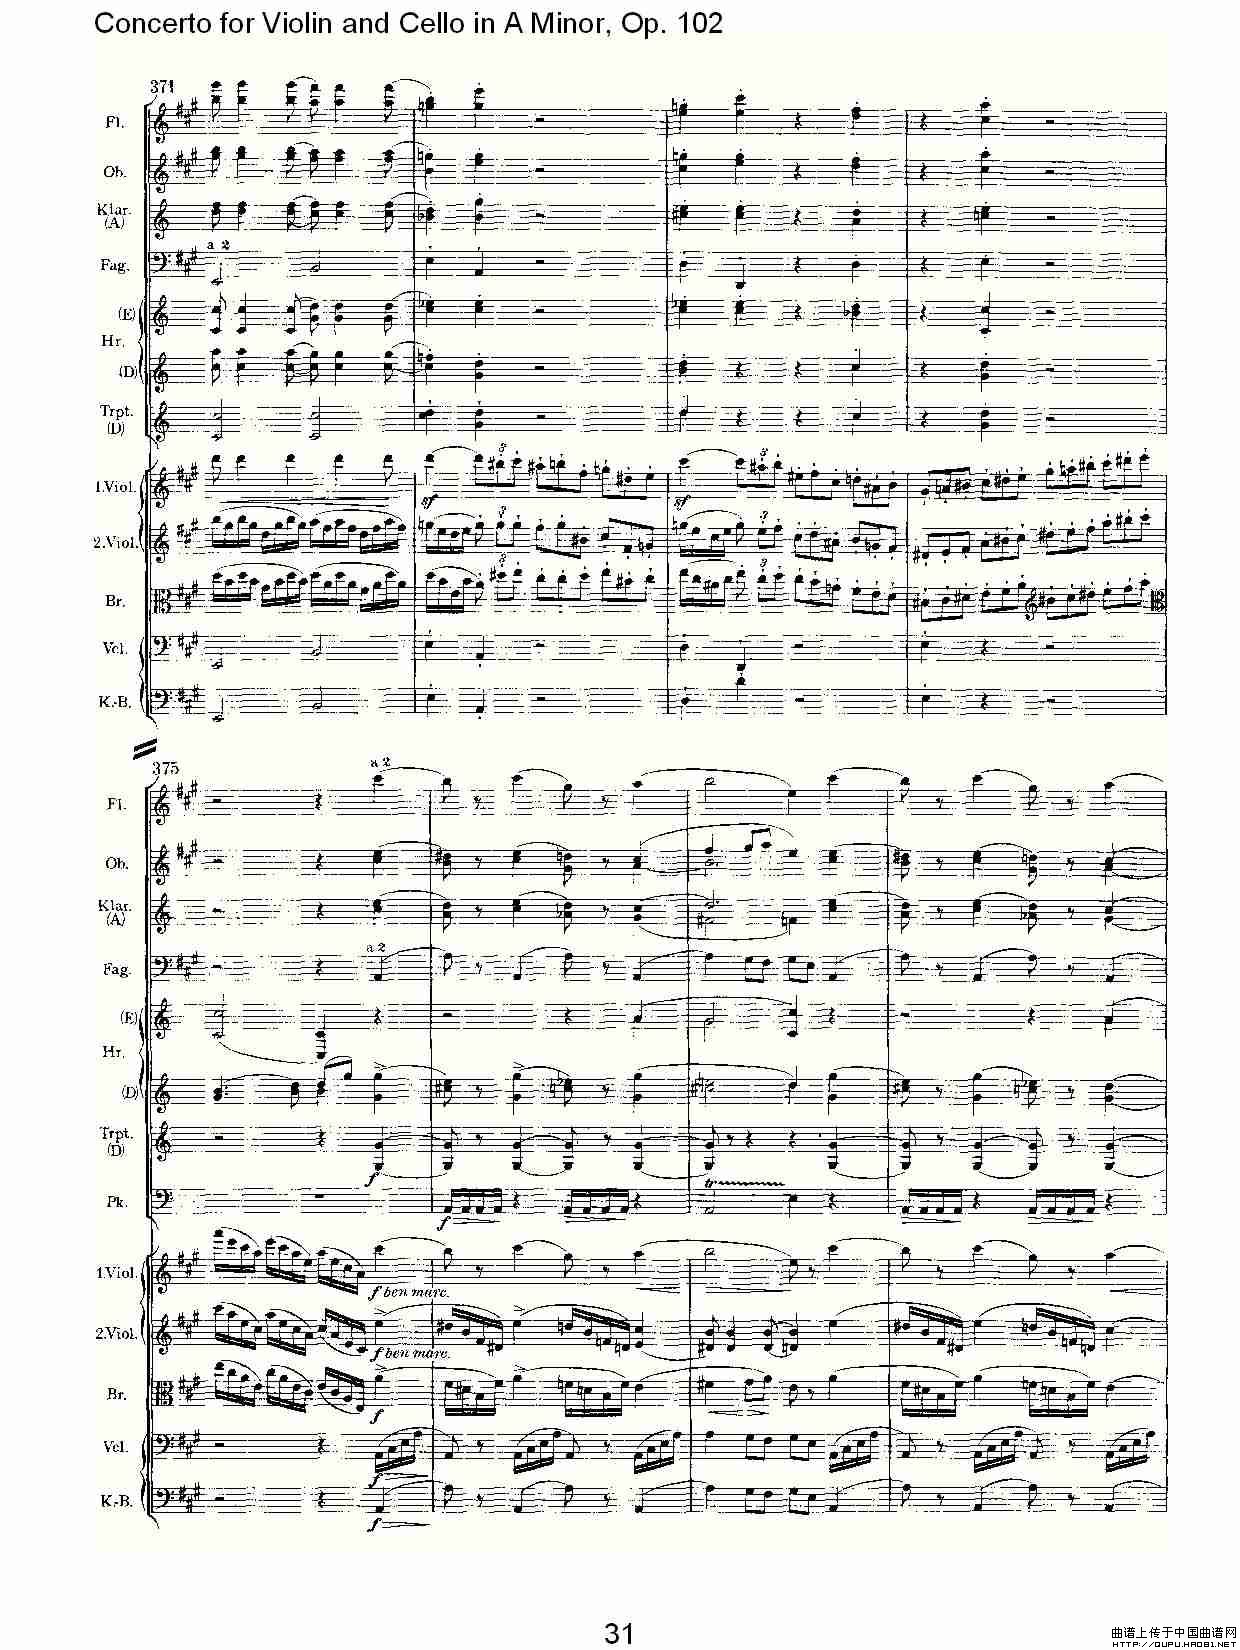 A小调小提琴与大提琴协奏曲, Op.102第一乐章小提琴谱